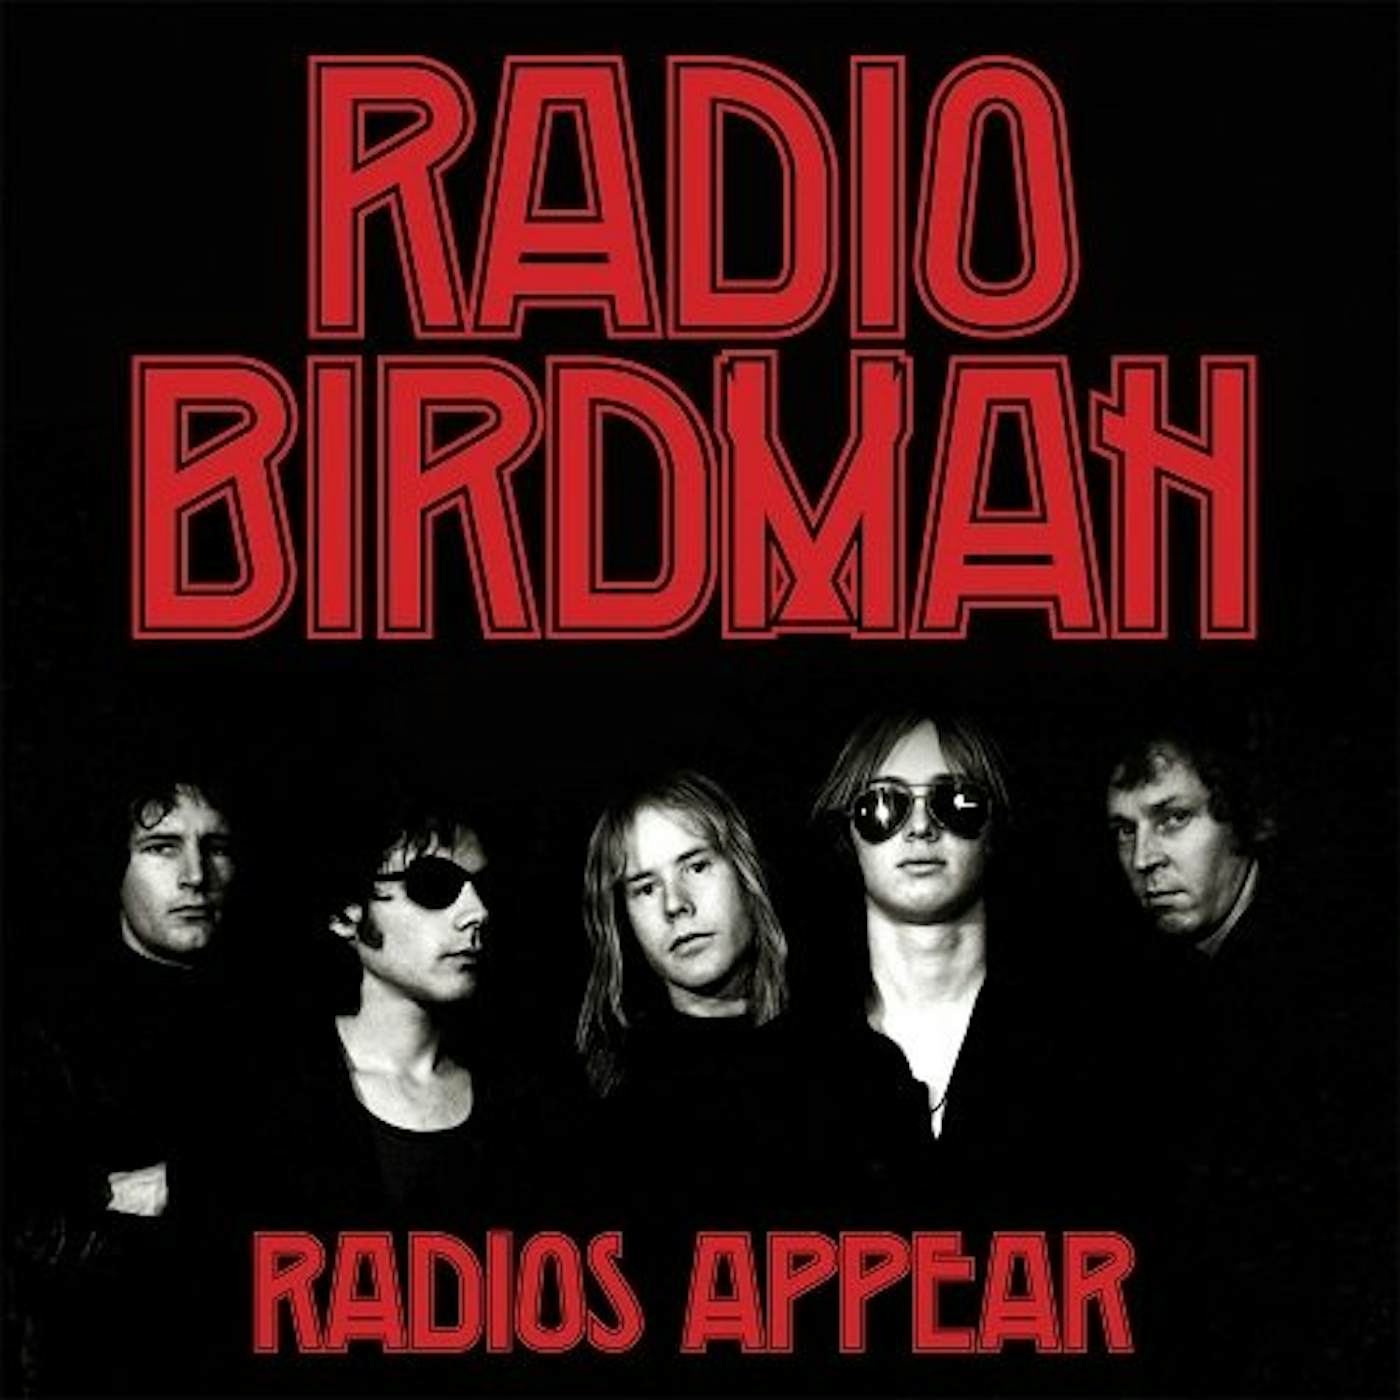 Radio Birdman RADIO'S APPEAR (TRAFALGAR VERSION) Vinyl Record